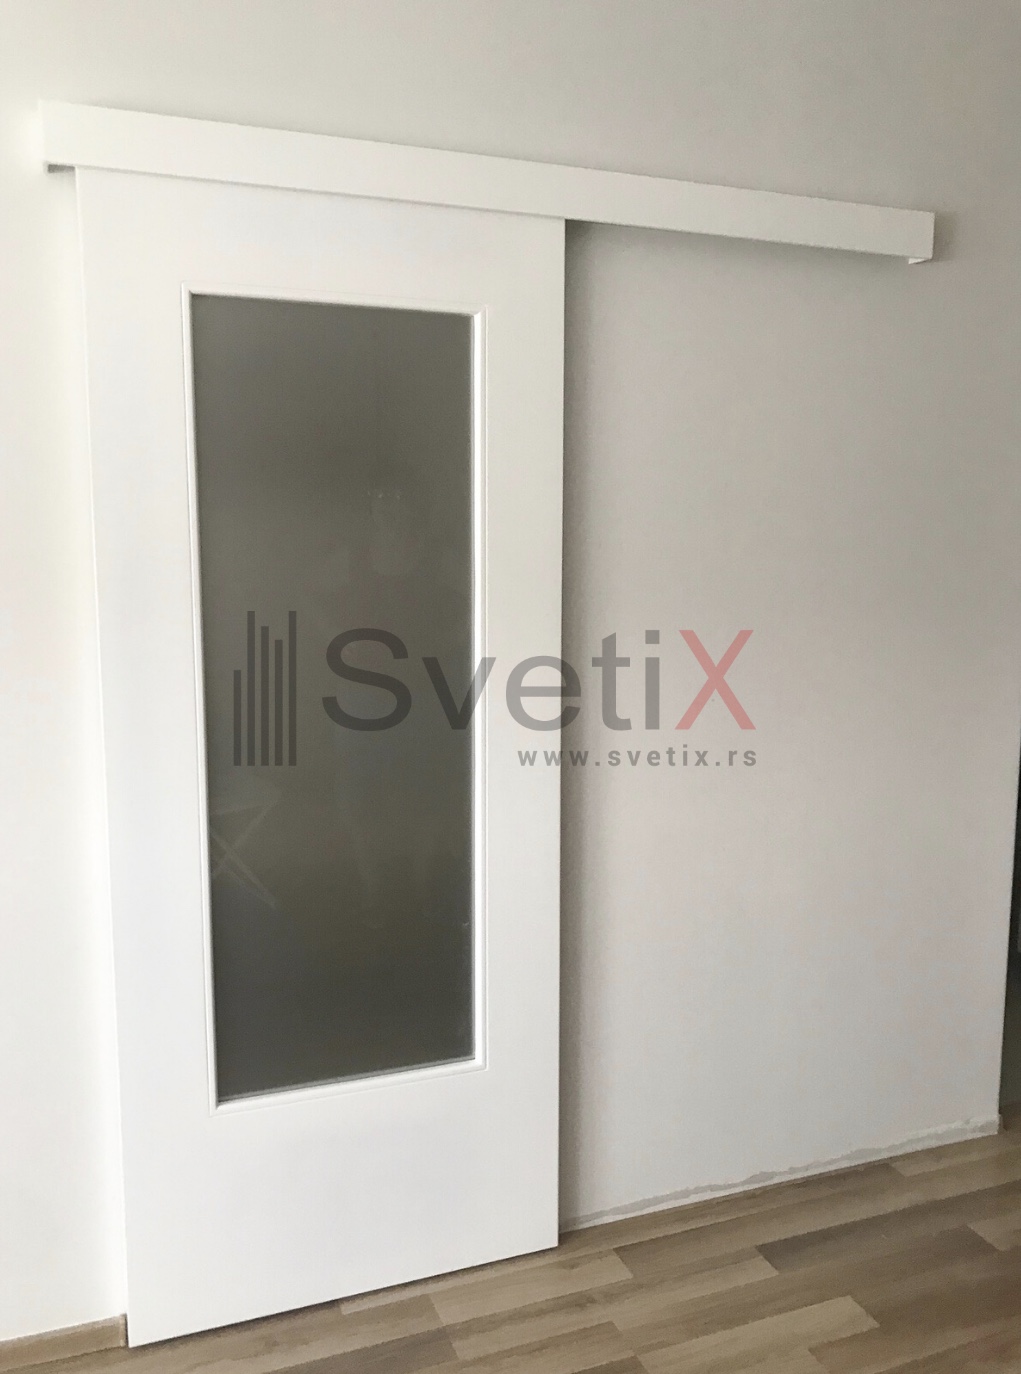 Klizna vrata SVETIX - Pregradna klizna vrata - farbani medijapan sa peskirnim staklom - klizni sistem SVETIX SV50 